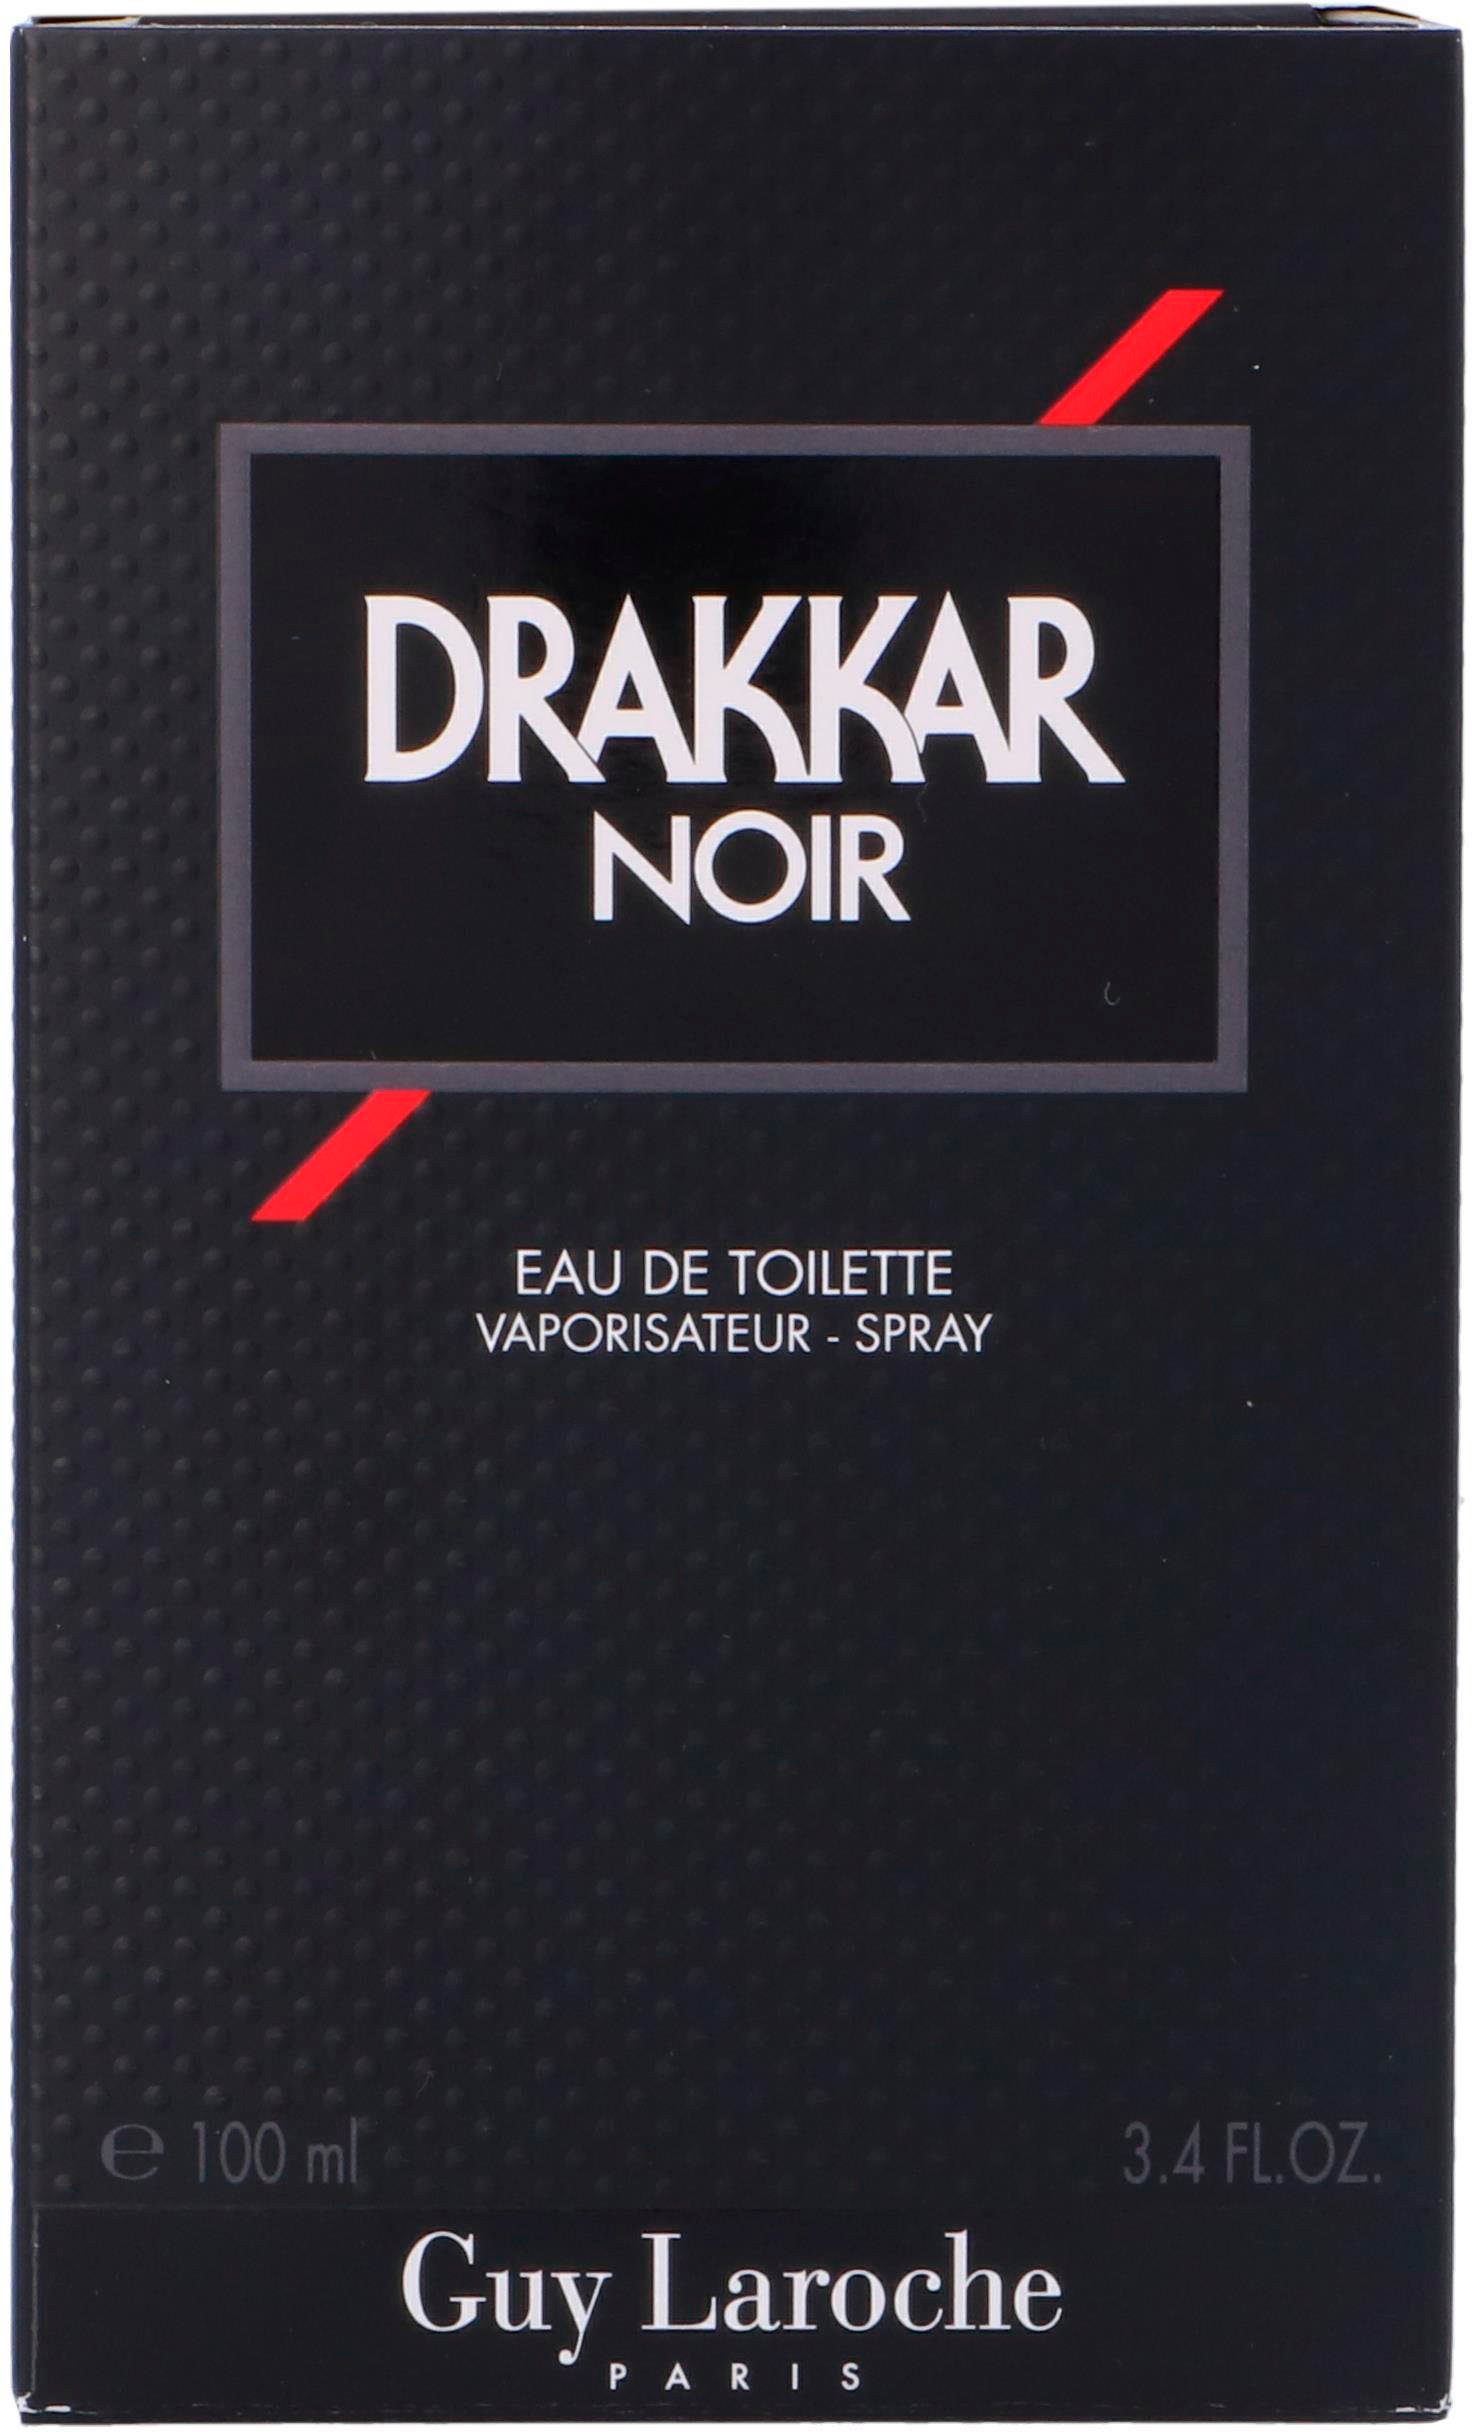 Eau Noir Toilette Guy de Drakkar Laroche